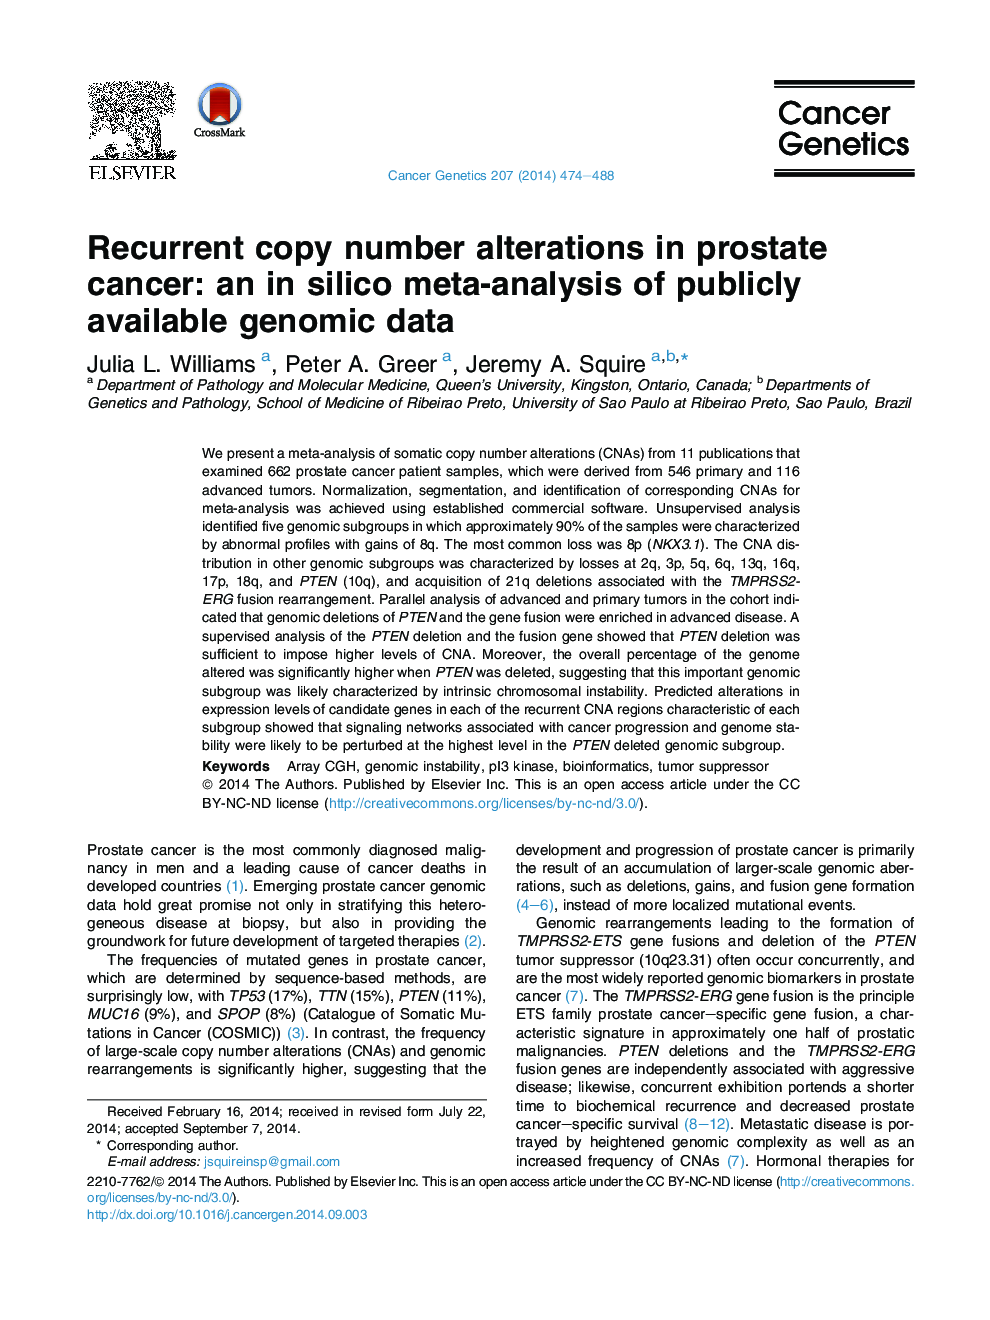 تغییرات نسخه کپی رونویسی در سرطان پروستات: در تجزیه و تحلیل سیلیکا از داده های عمومی ژنوم موجود است 